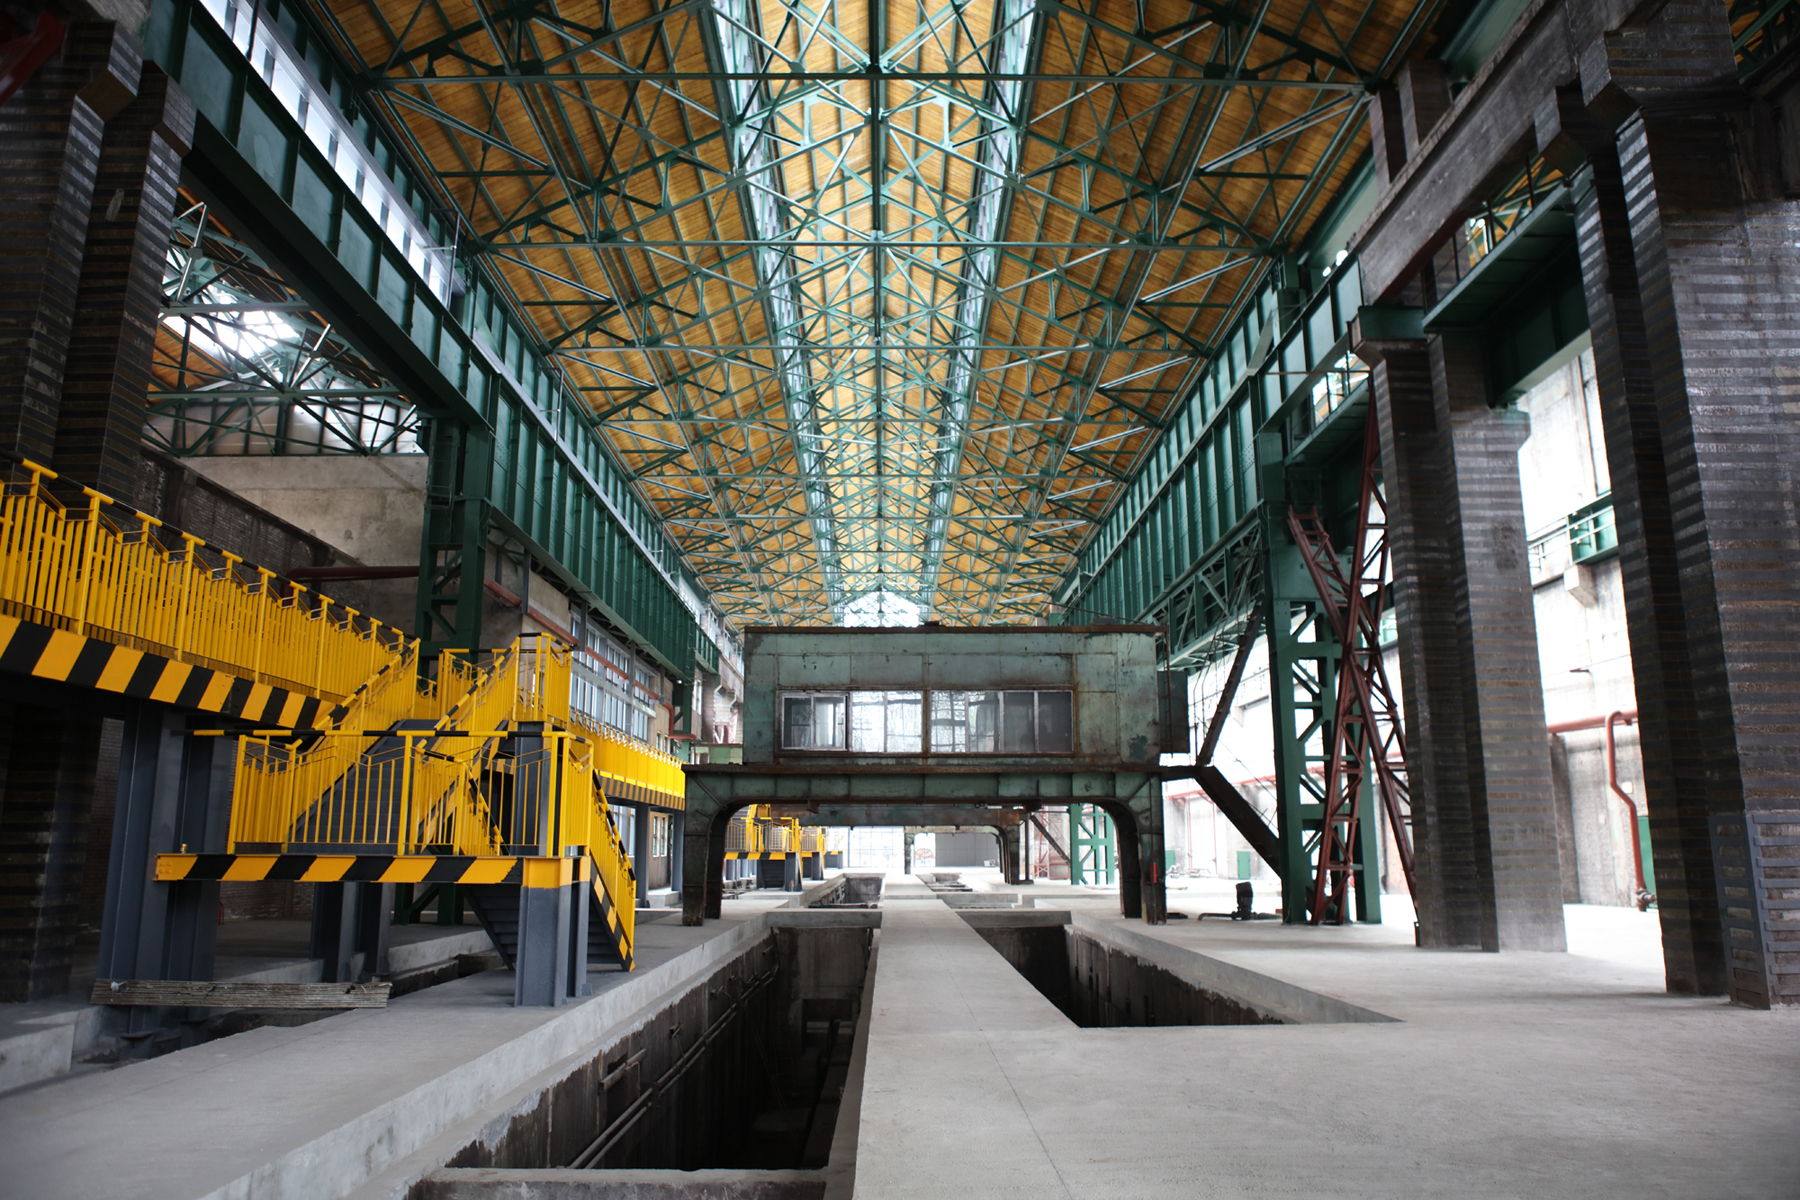 钢铁厂内部图片图片图片